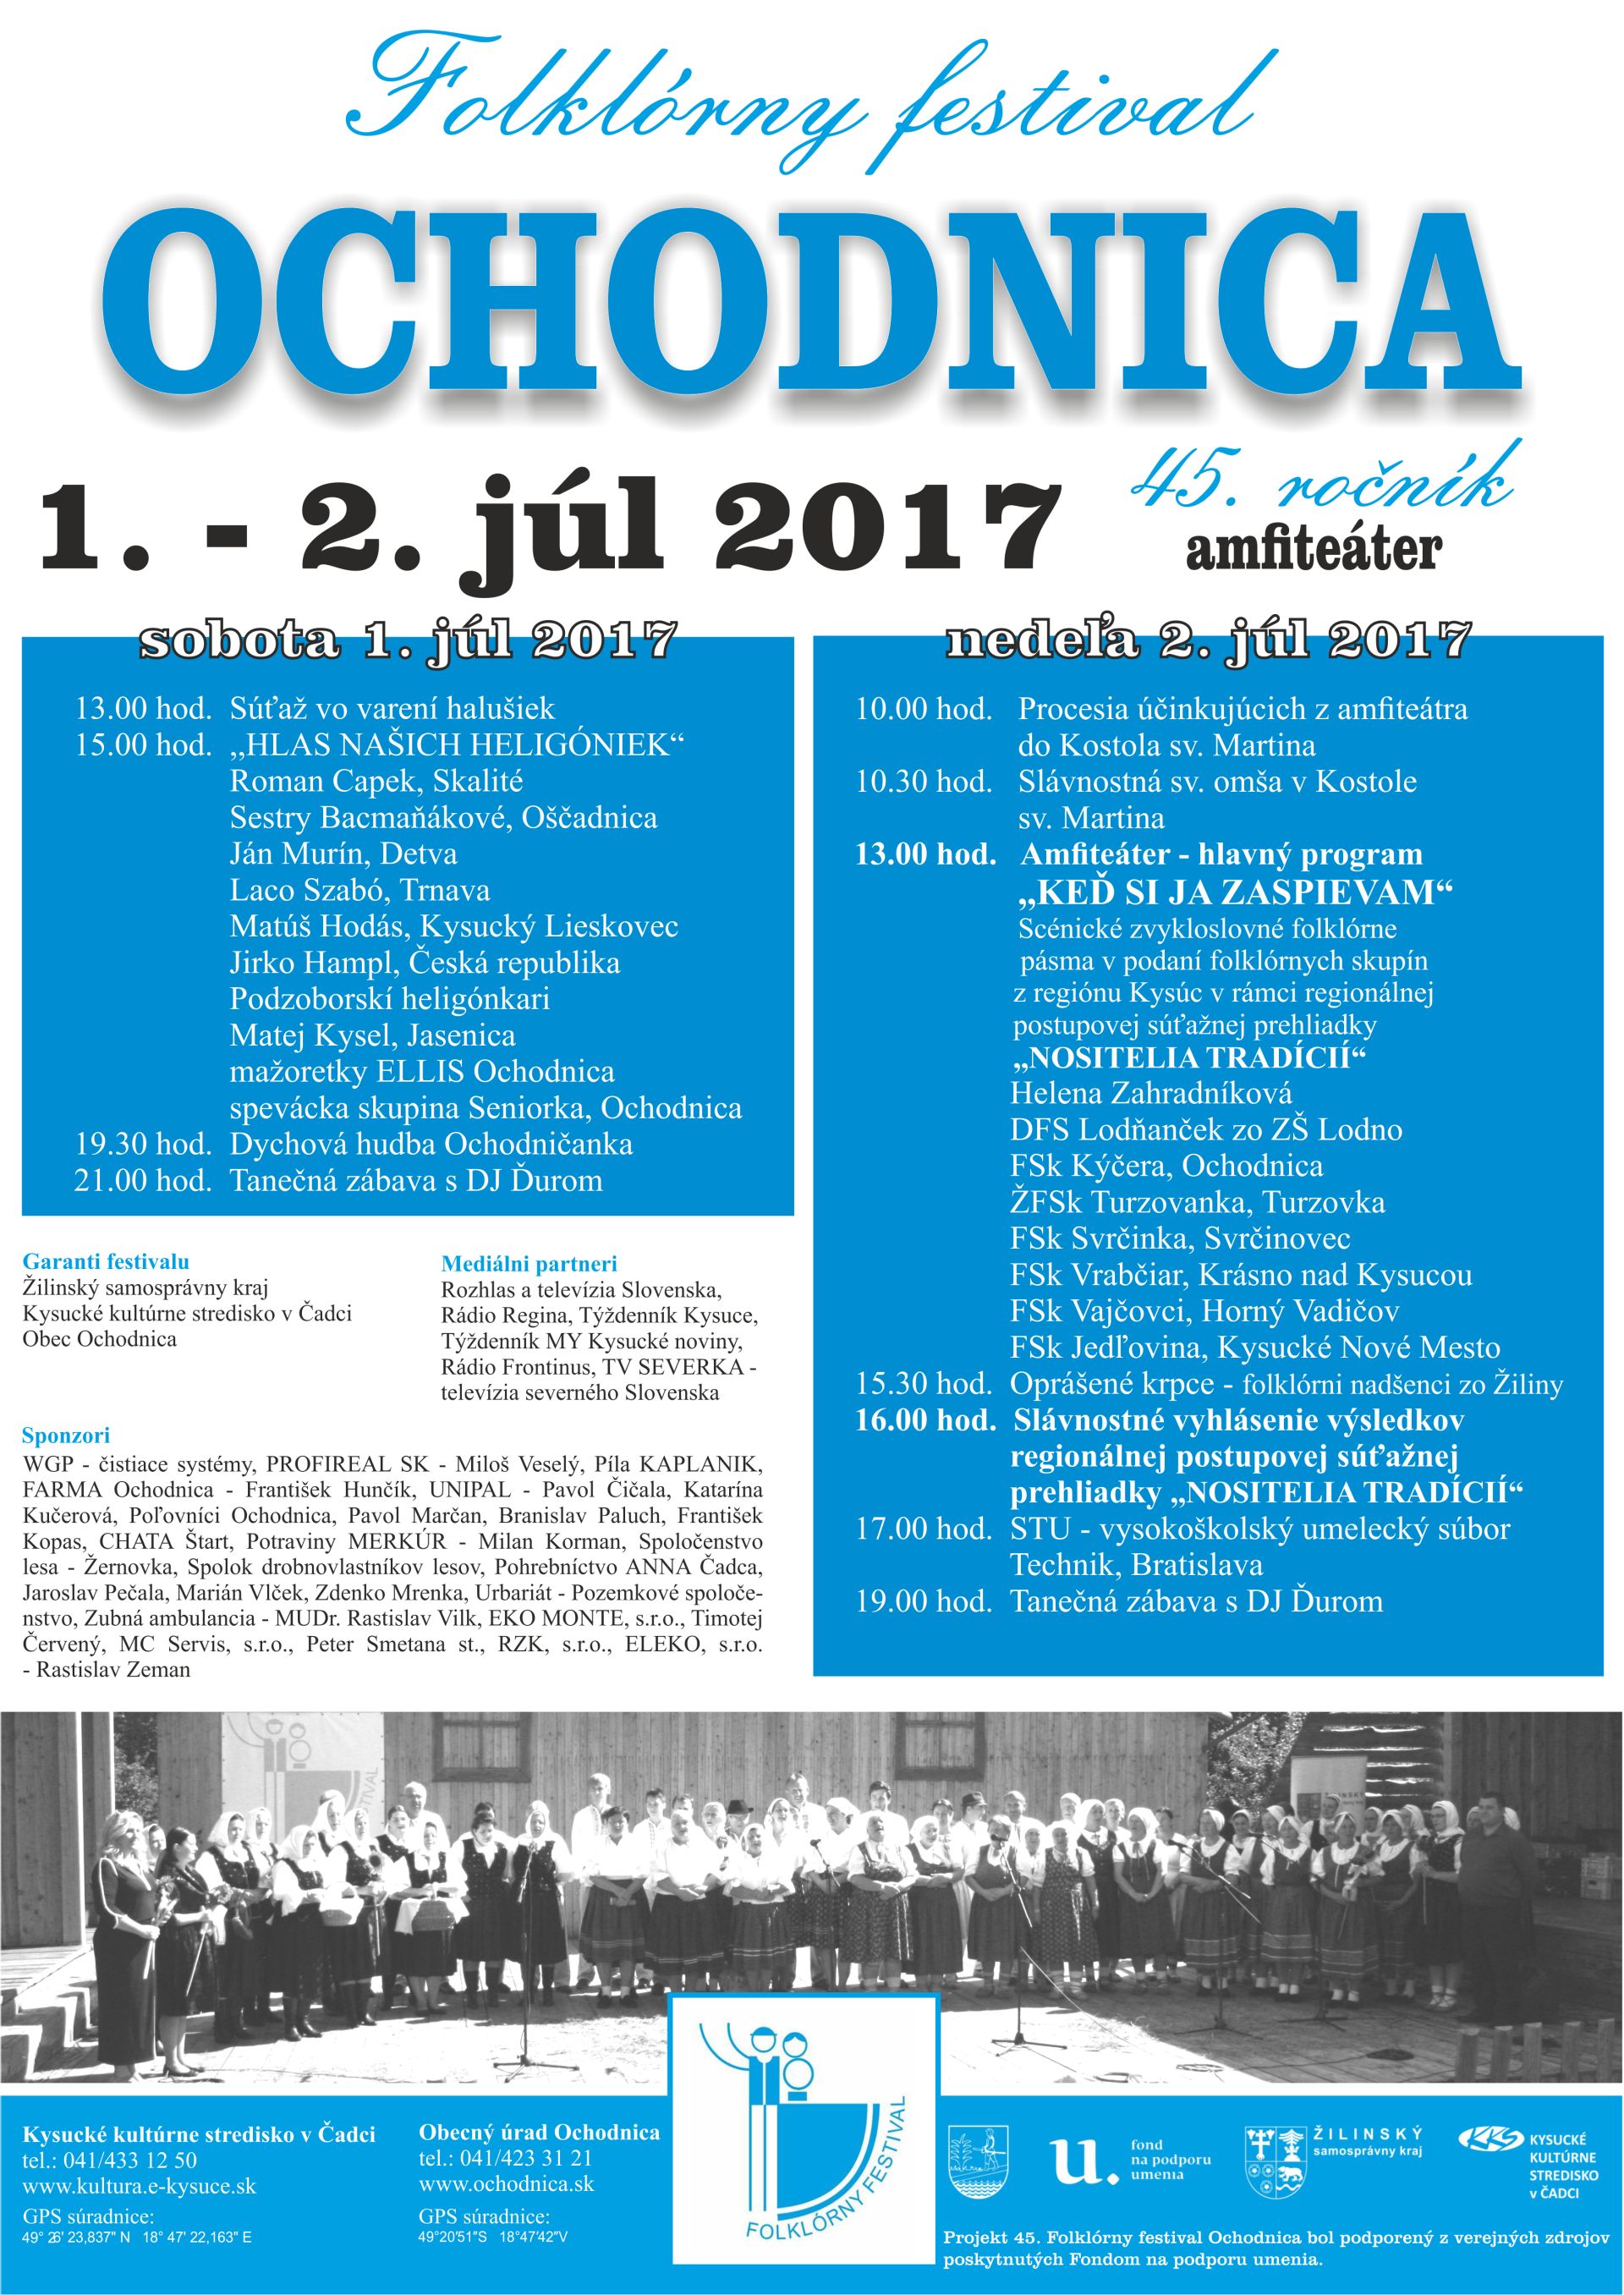 Folklrny festival Ochodnica 2017 - 45. ronk